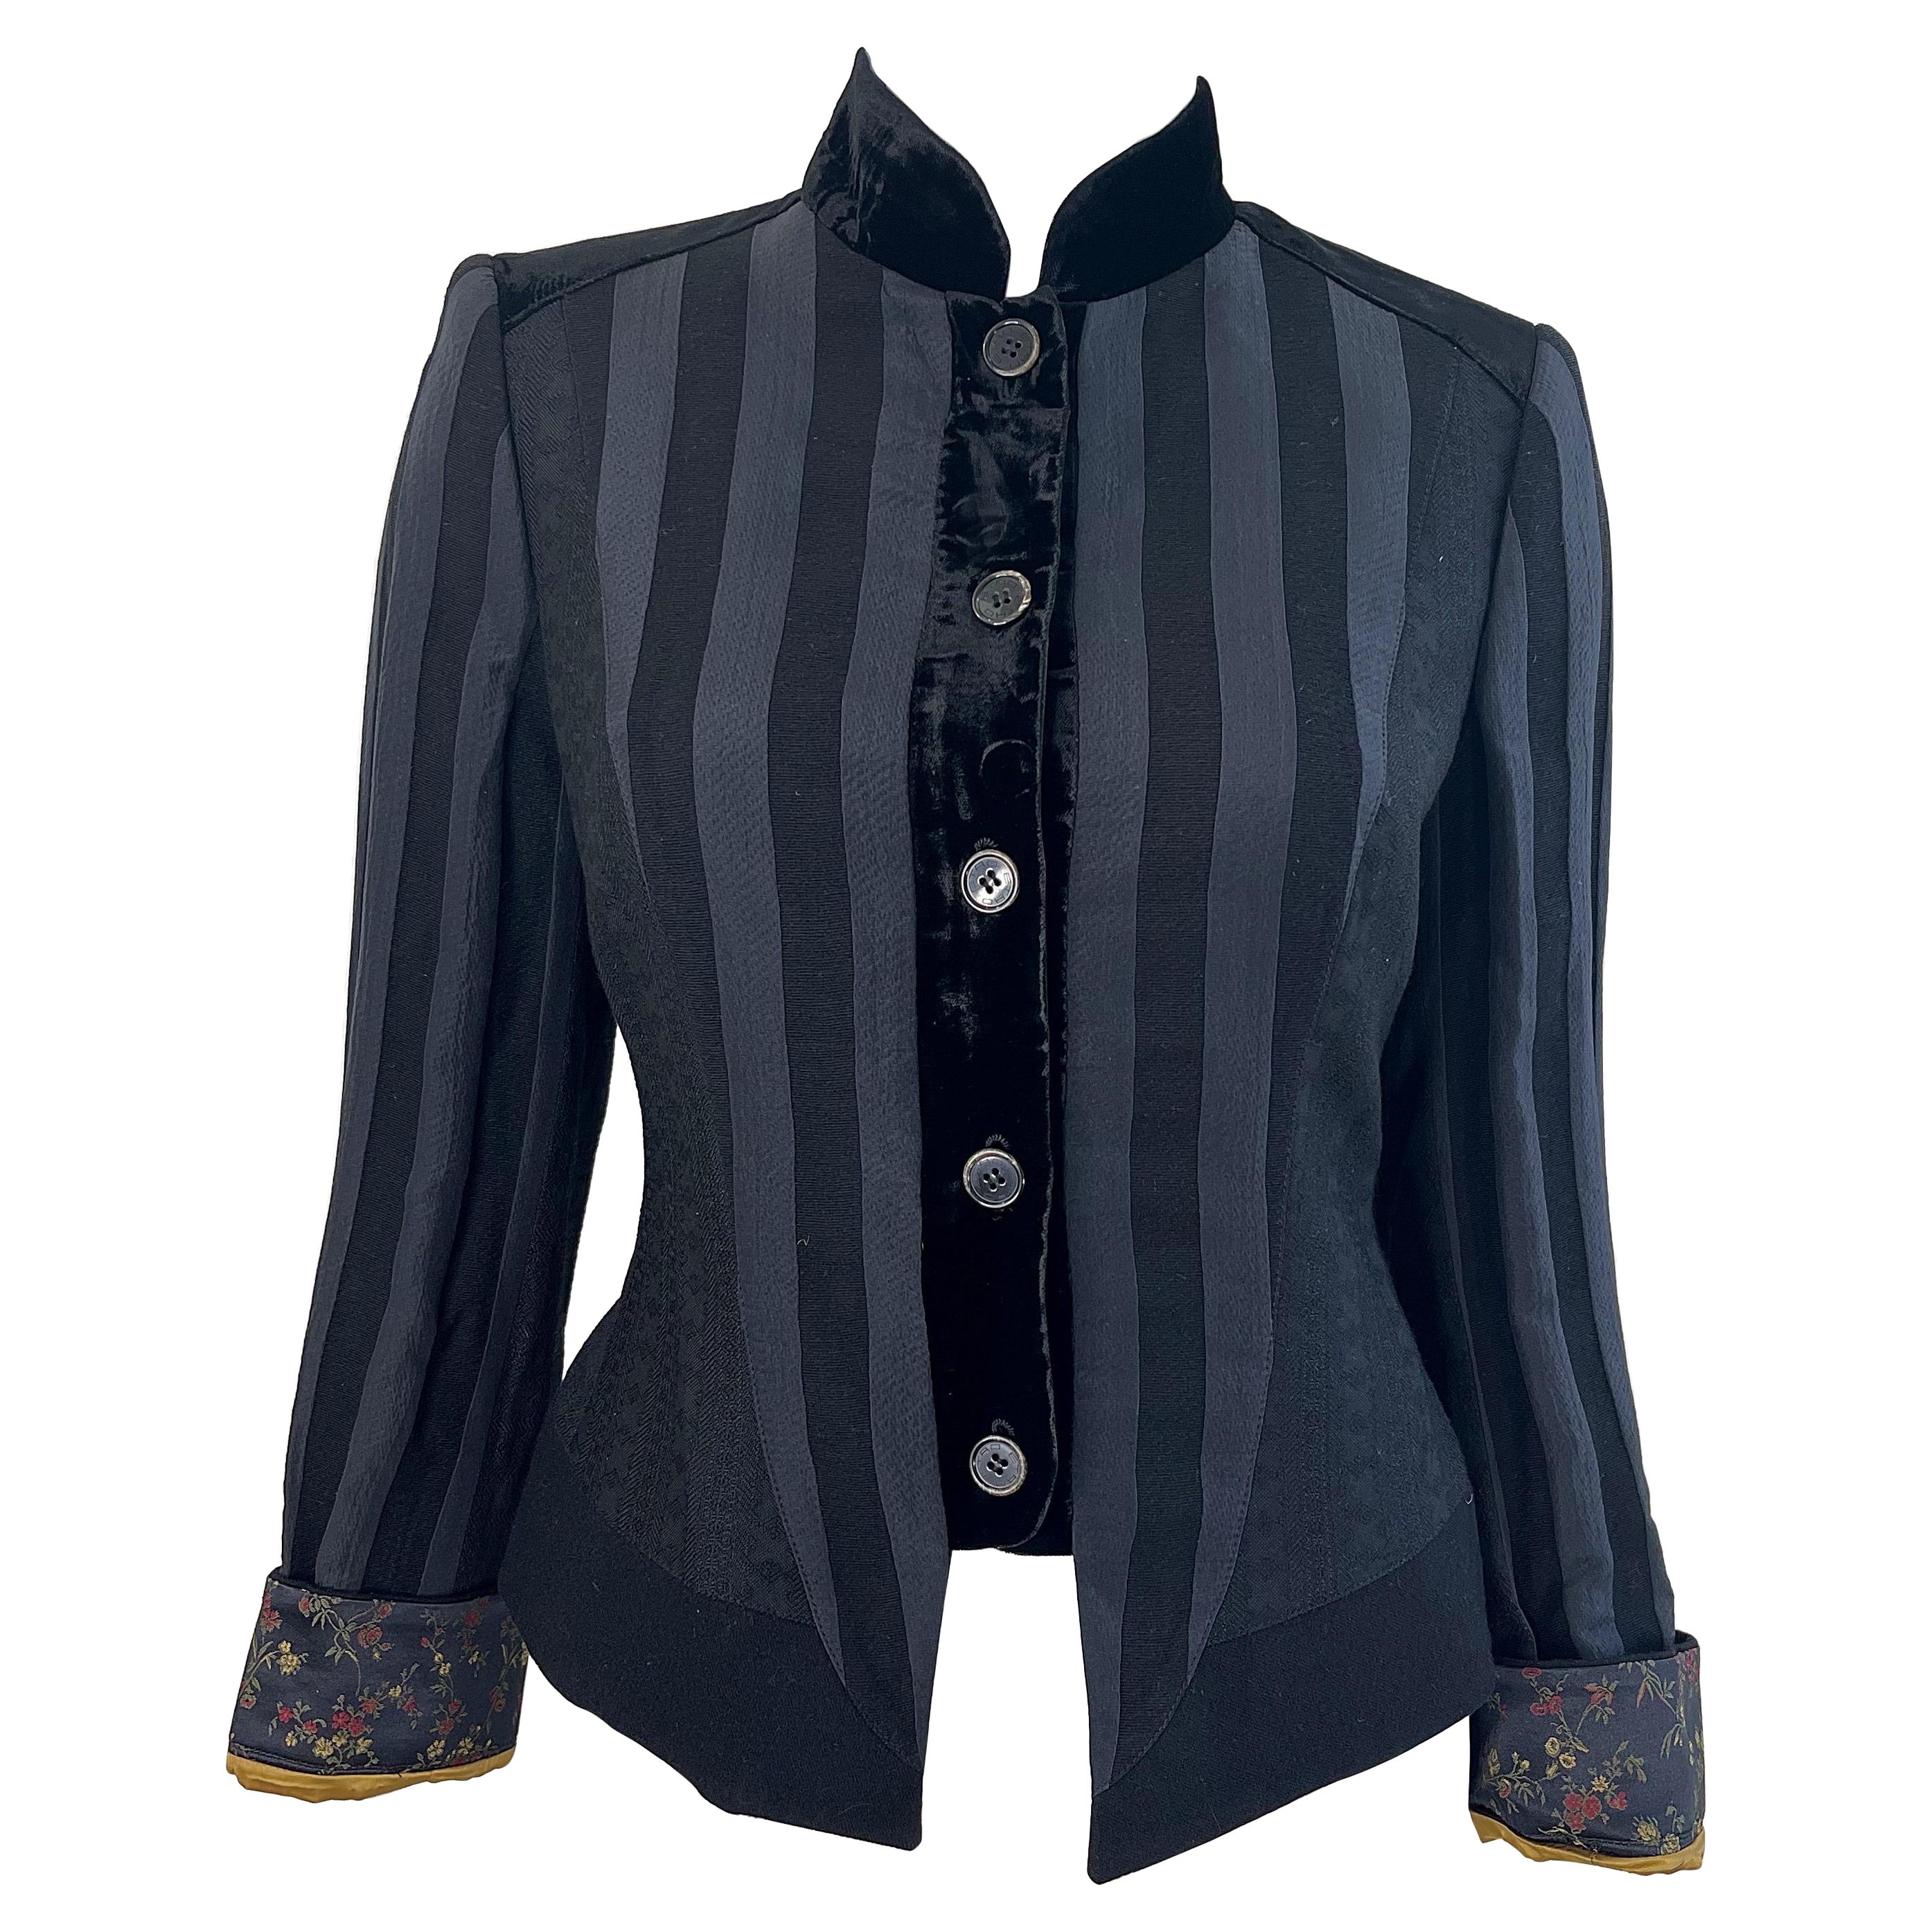 Etro Black Silk Blend Size 44 / US 8 Military Inspired Jacket w/ Flower Cuffs